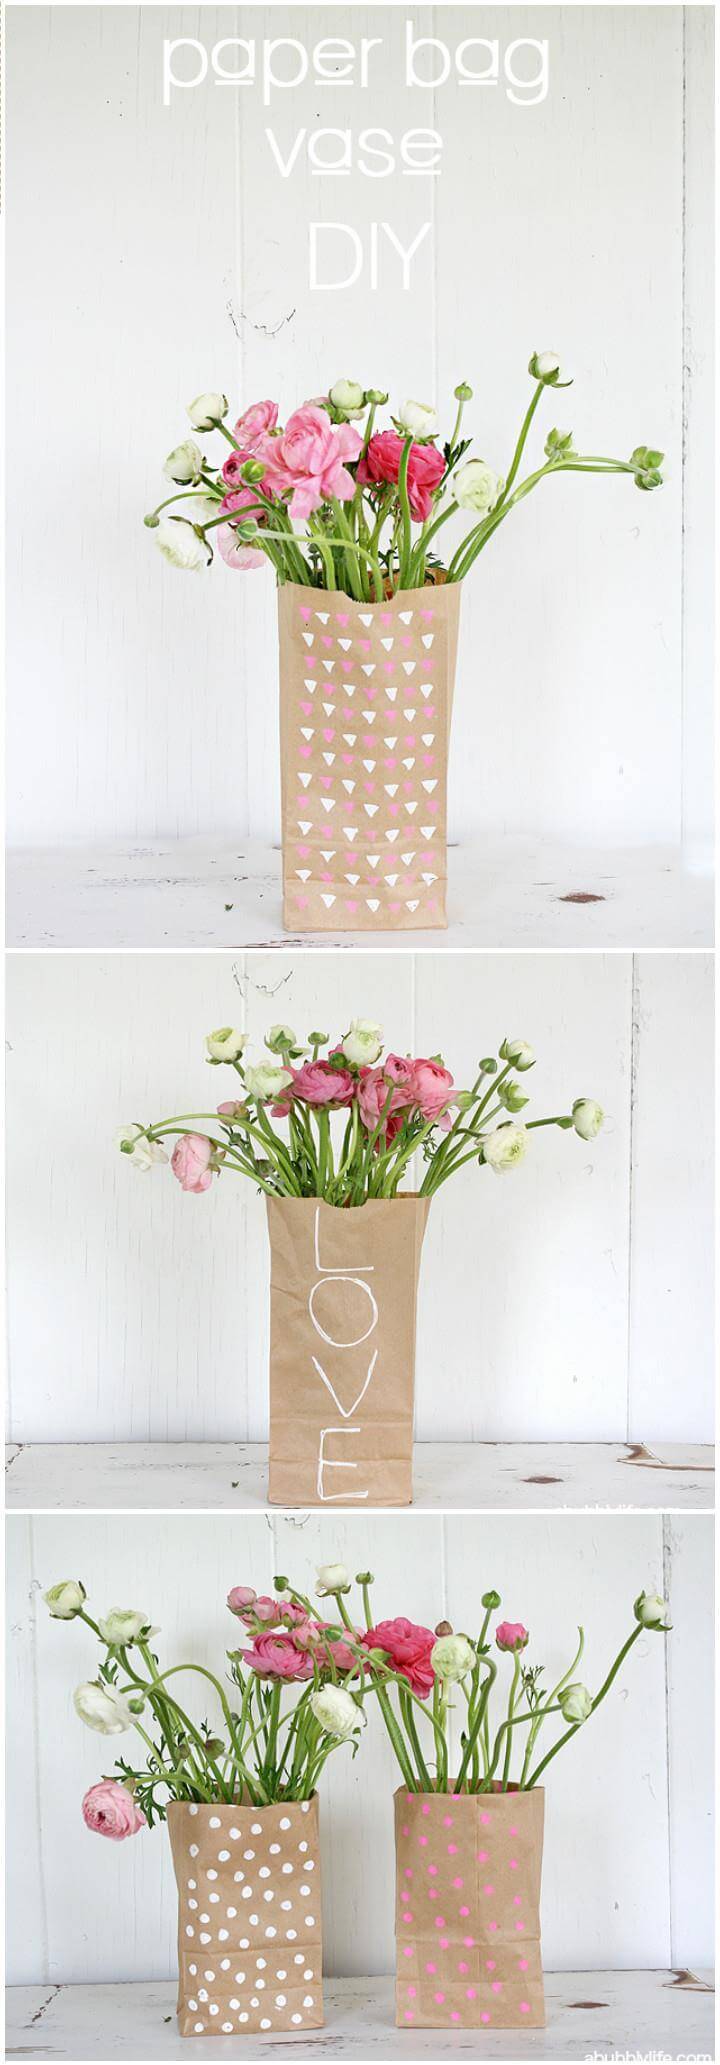 easy paper bag vase